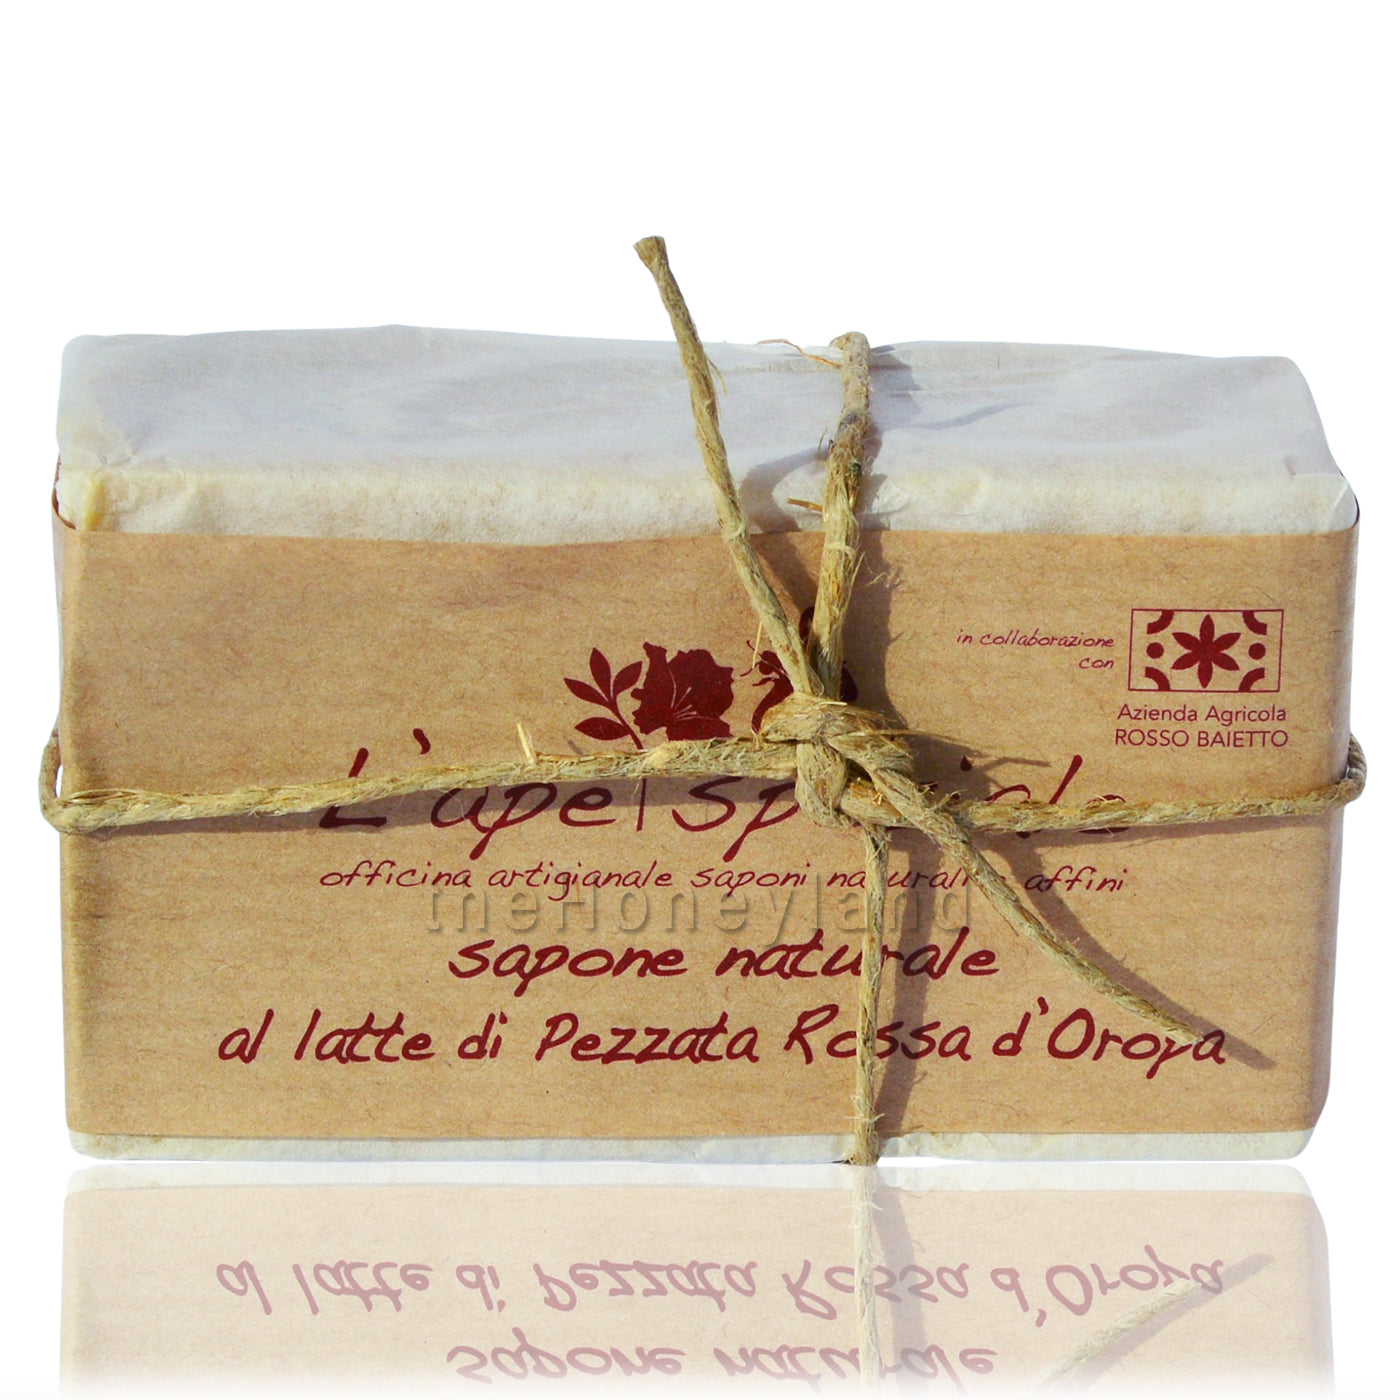 Pezzata Rossa d'Oropa milk soap and organic honey (Biella Prealps)